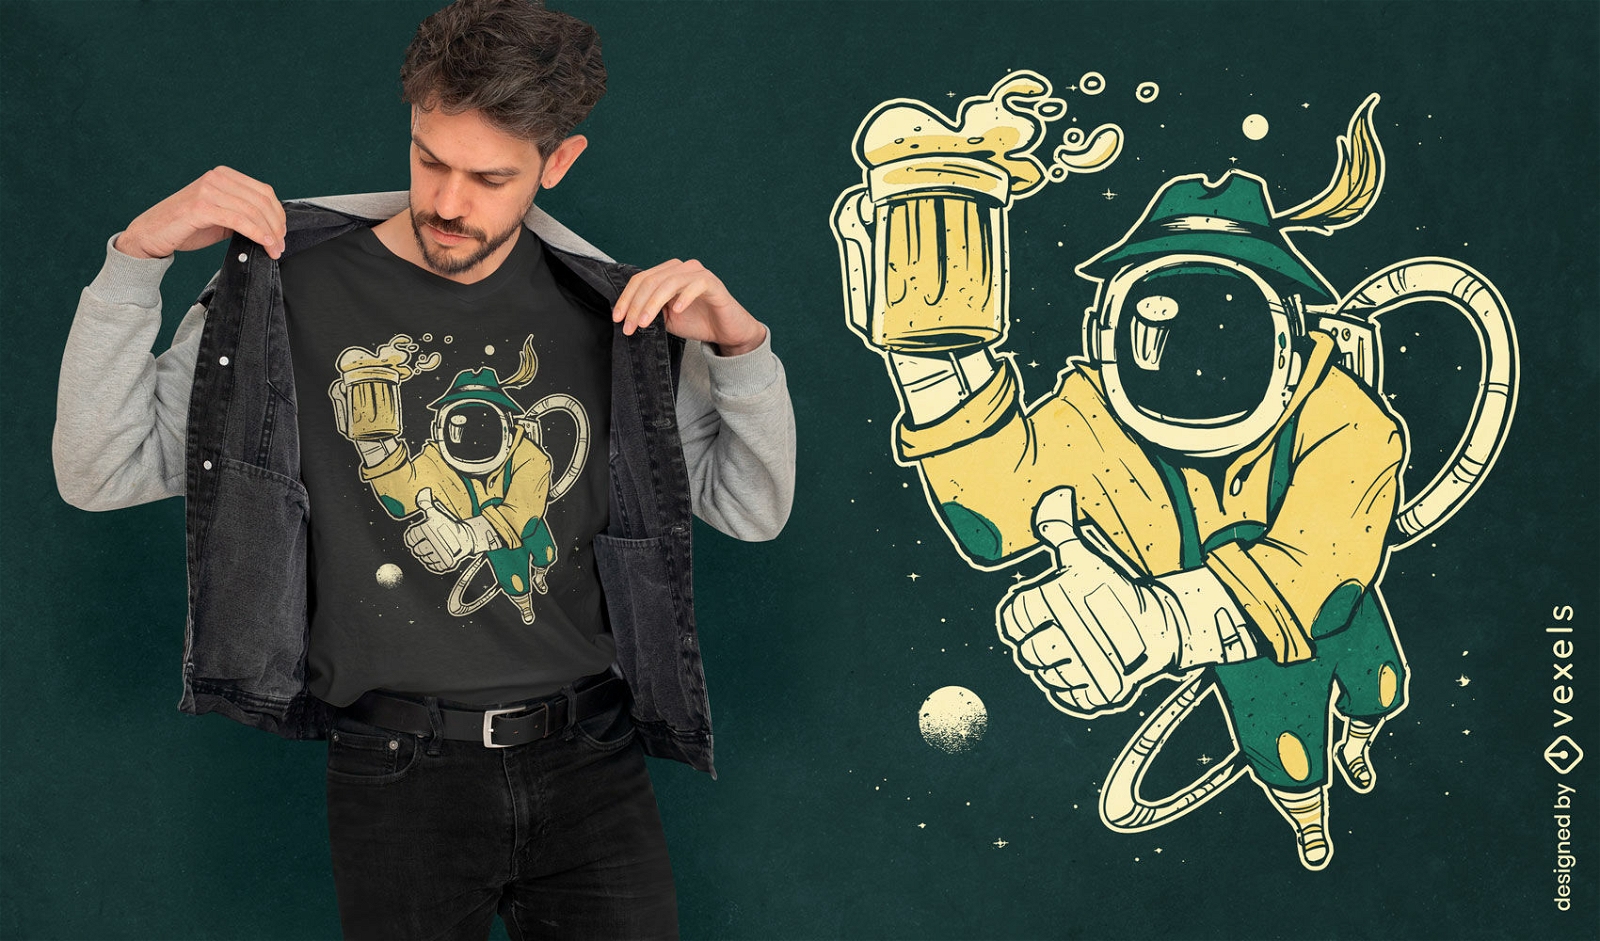 German astronaut beer t-shirt design